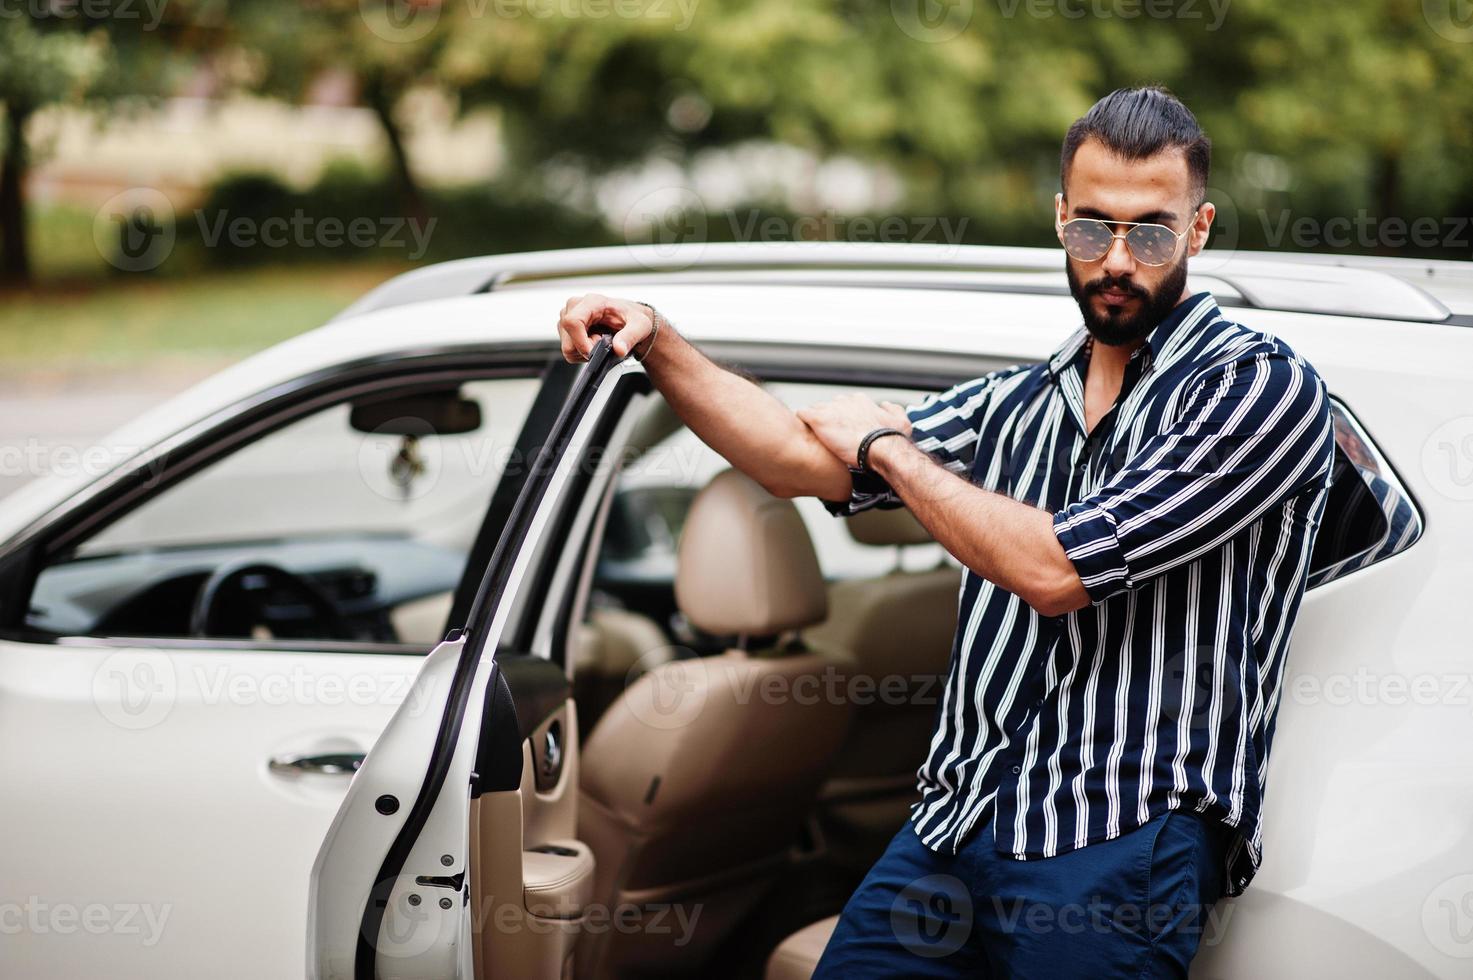 un homme arabe réussi porte une chemise rayée et des lunettes de soleil pose près de sa voiture suv blanche. hommes arabes élégants dans les transports. photo